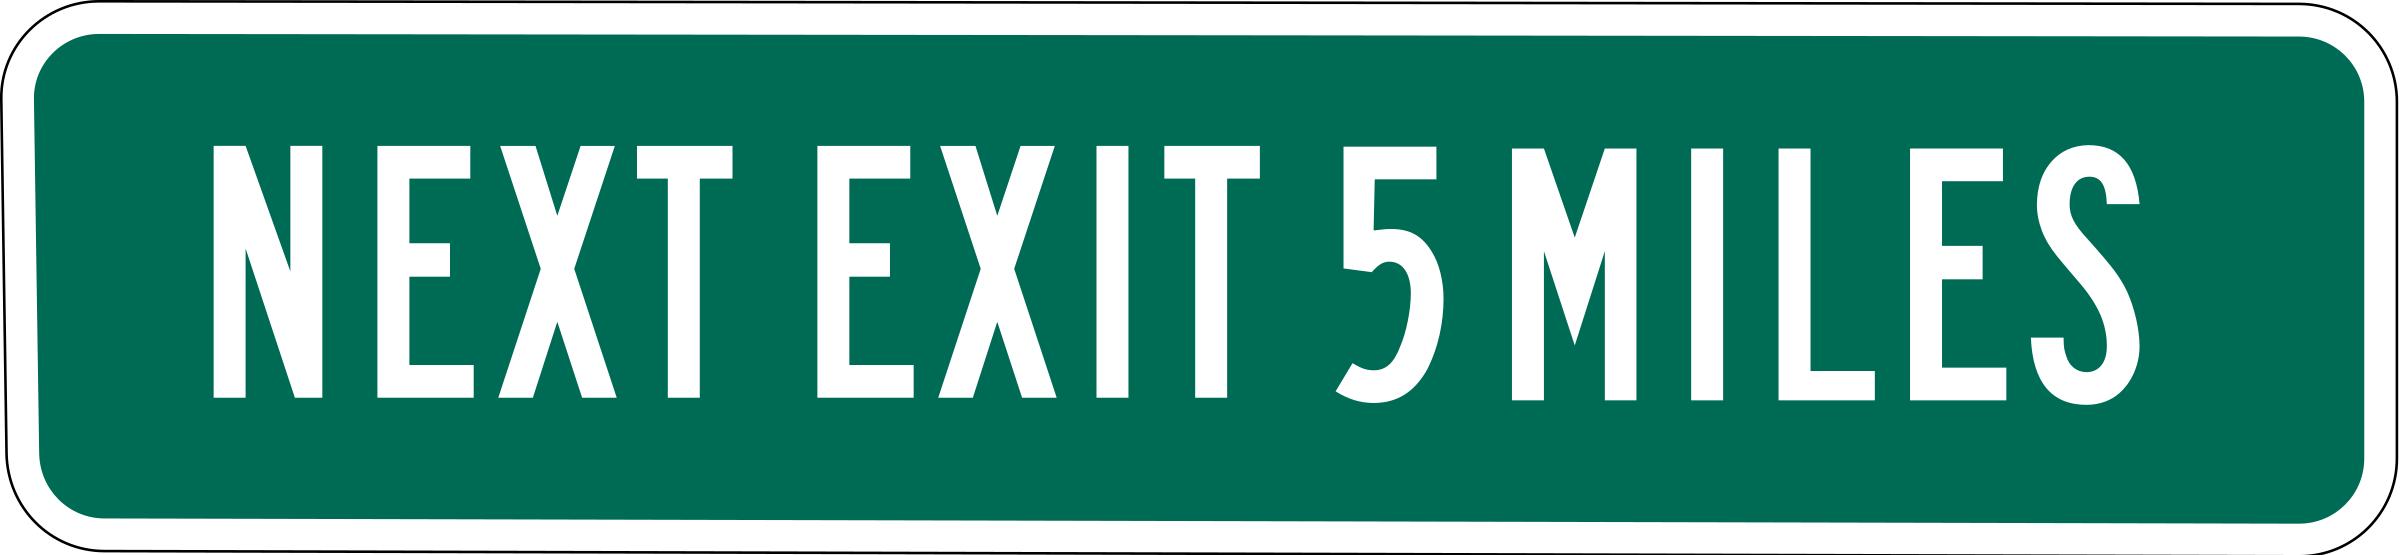 Next Exit 5 miles png